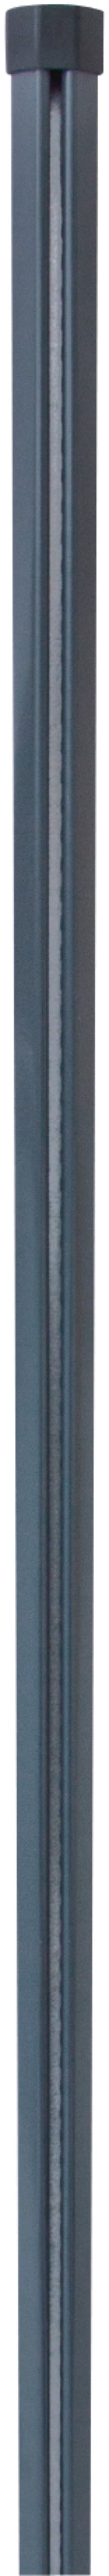 H+S Zwischensäule für Dübelplatte anthrazit 0,8 m